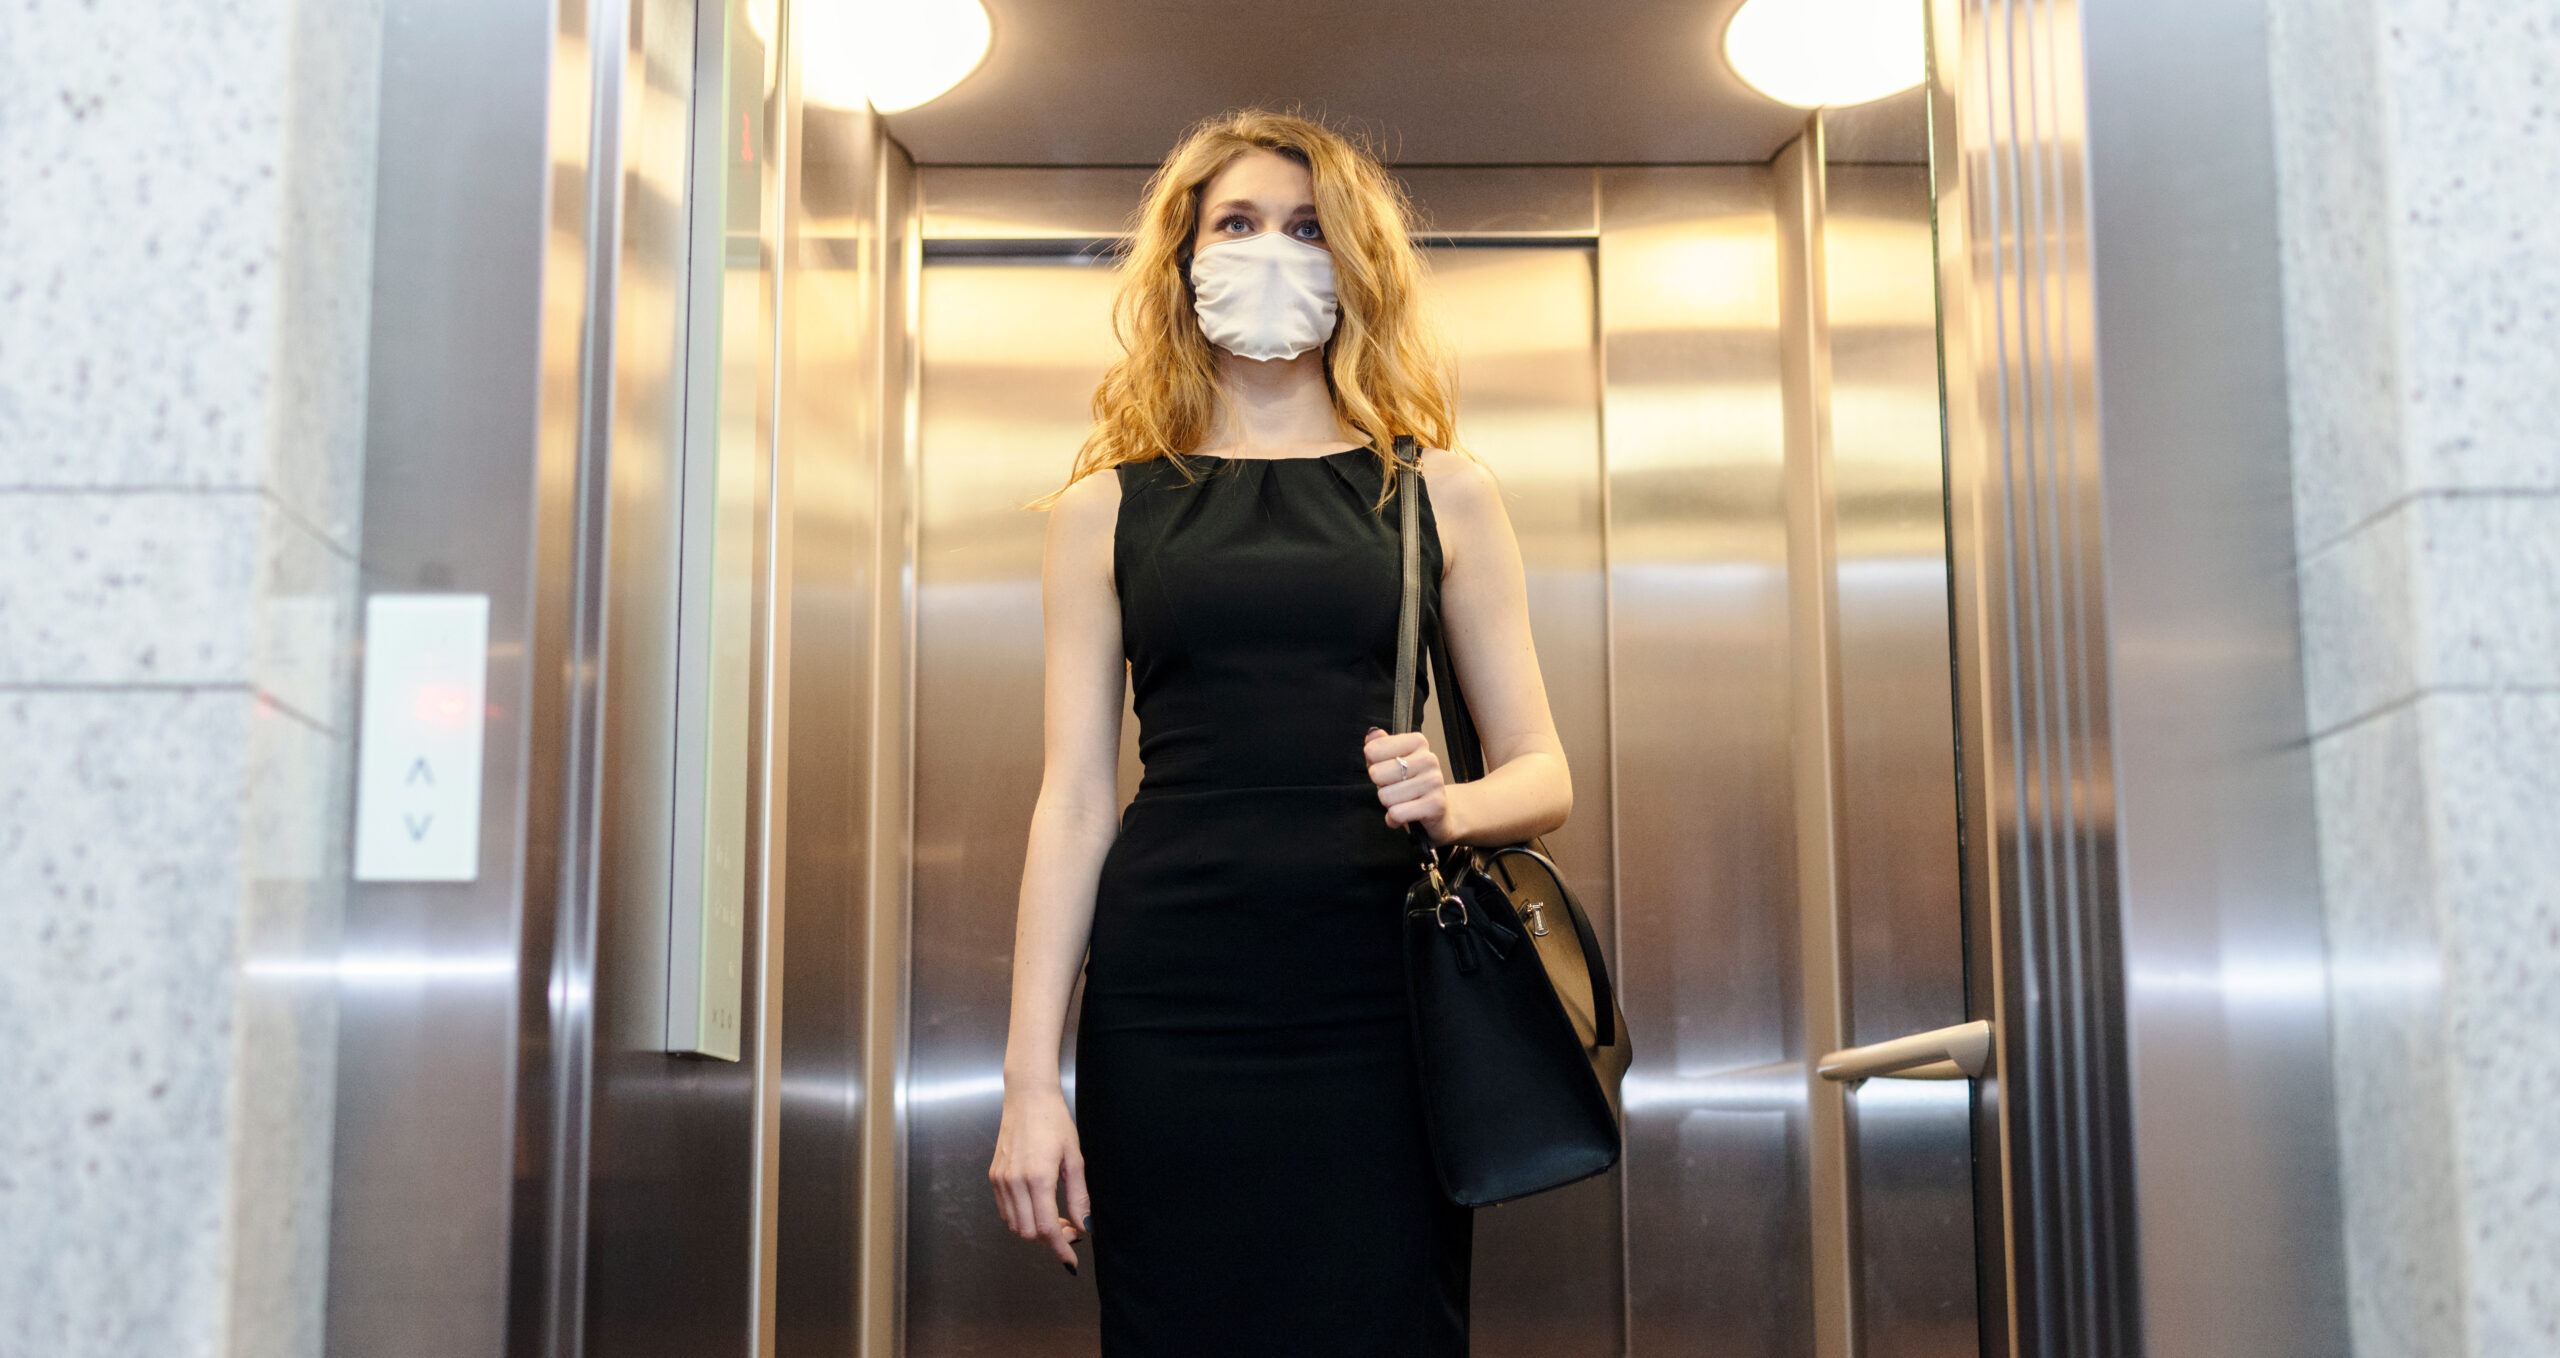 Vrouw in lift met mondkapje